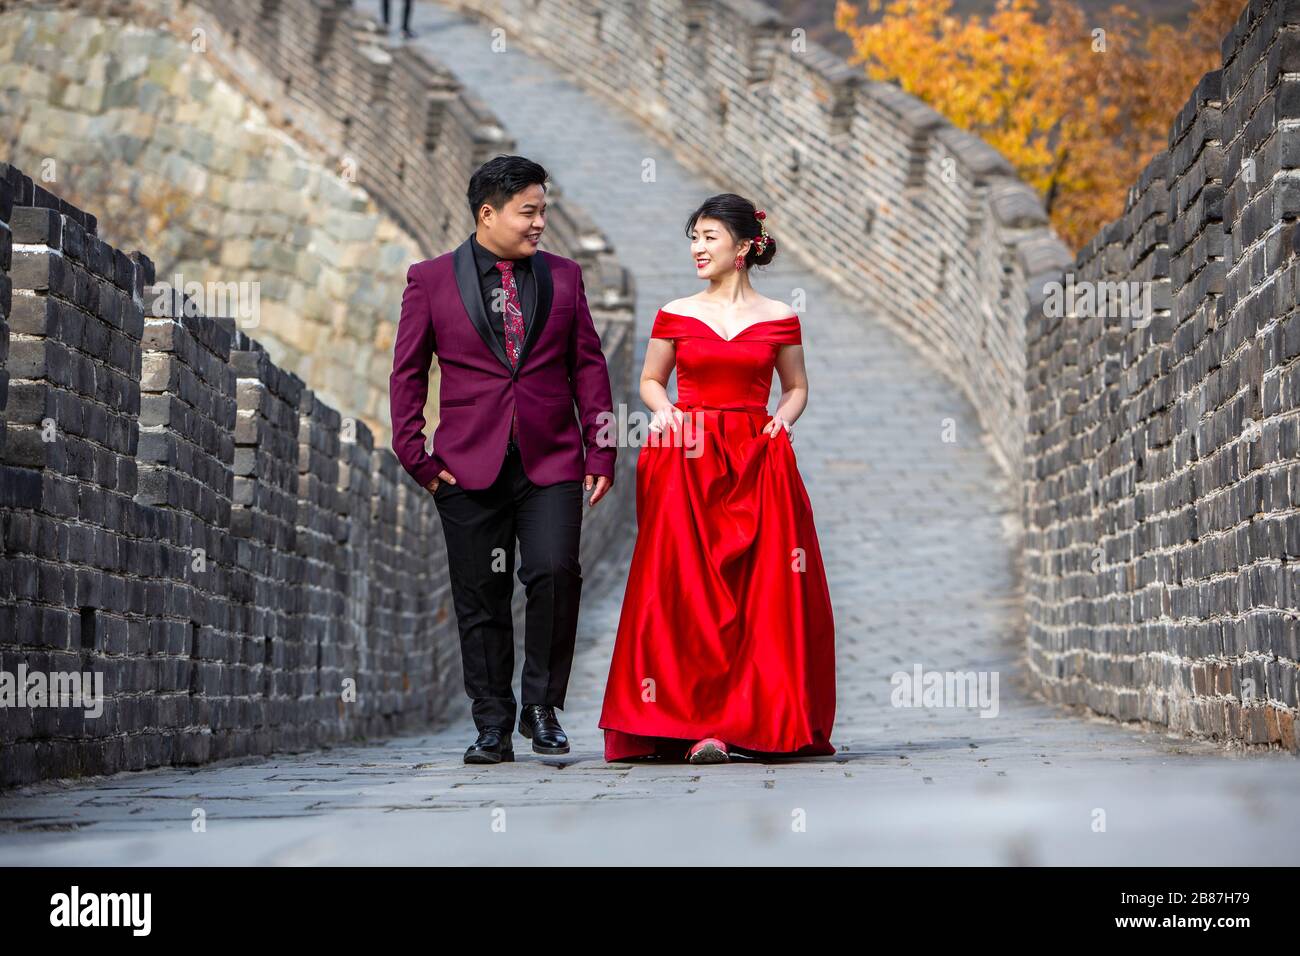 Wedding portrait at Mutianyu Great Wall of China Stock Photo